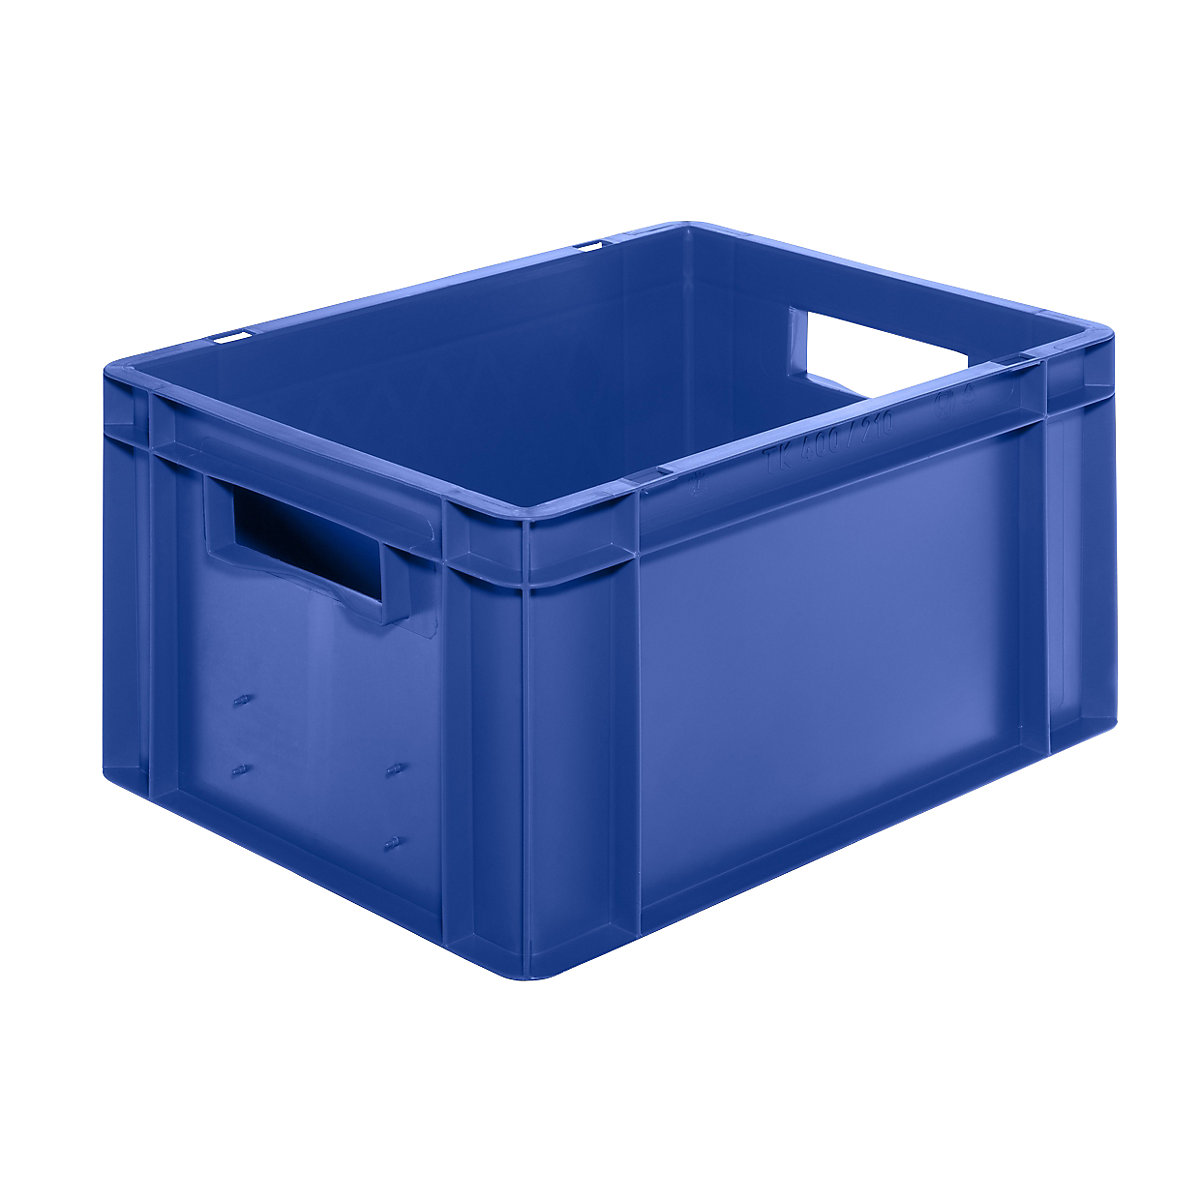 Euro-Format-Stapelbehälter, Wände und Boden geschlossen, LxBxH 400 x 300 x 210 mm, blau, VE 5 Stk